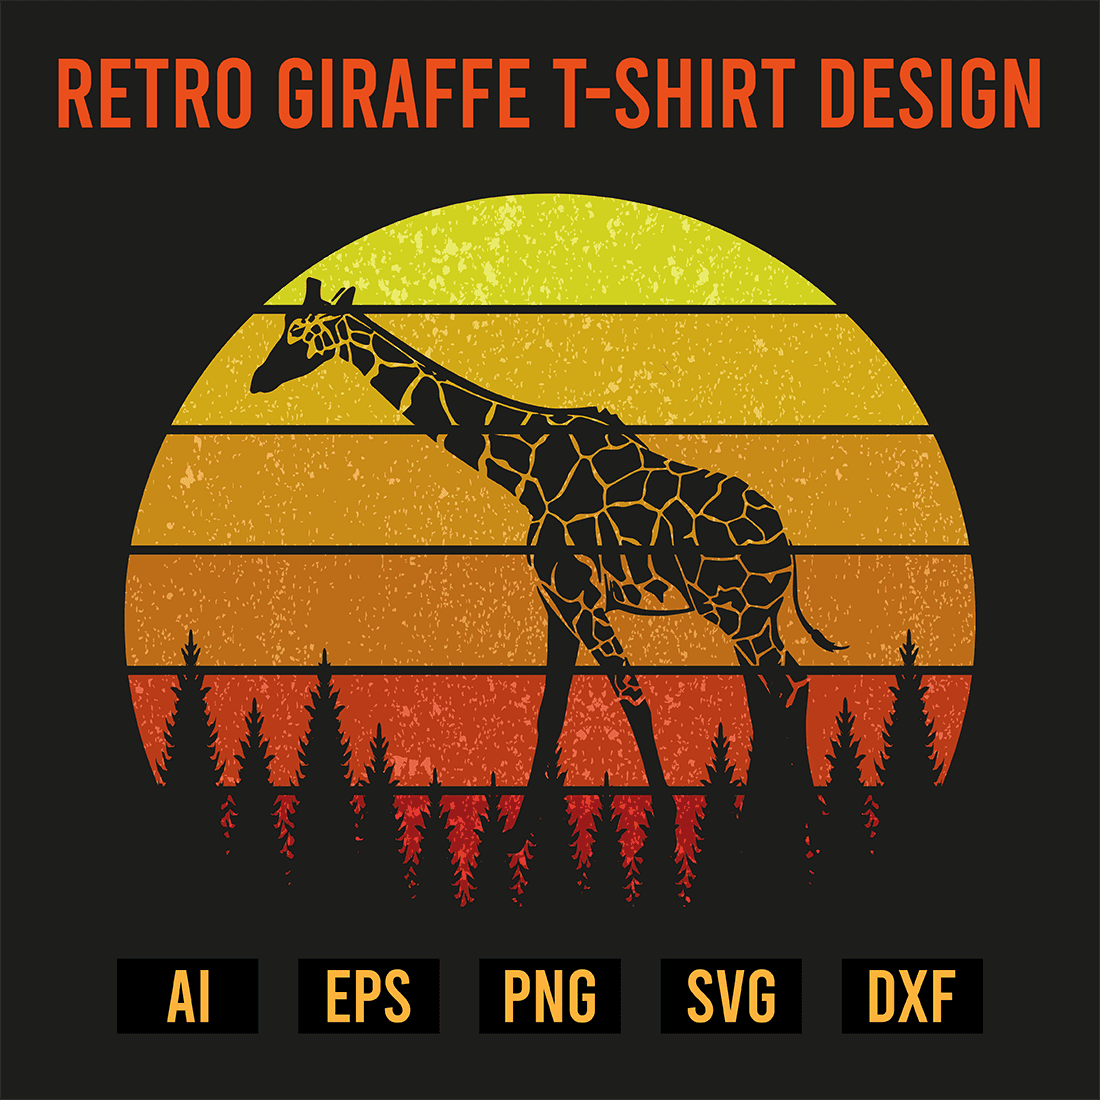 Retro Giraffe T-Shirt Design preview image.